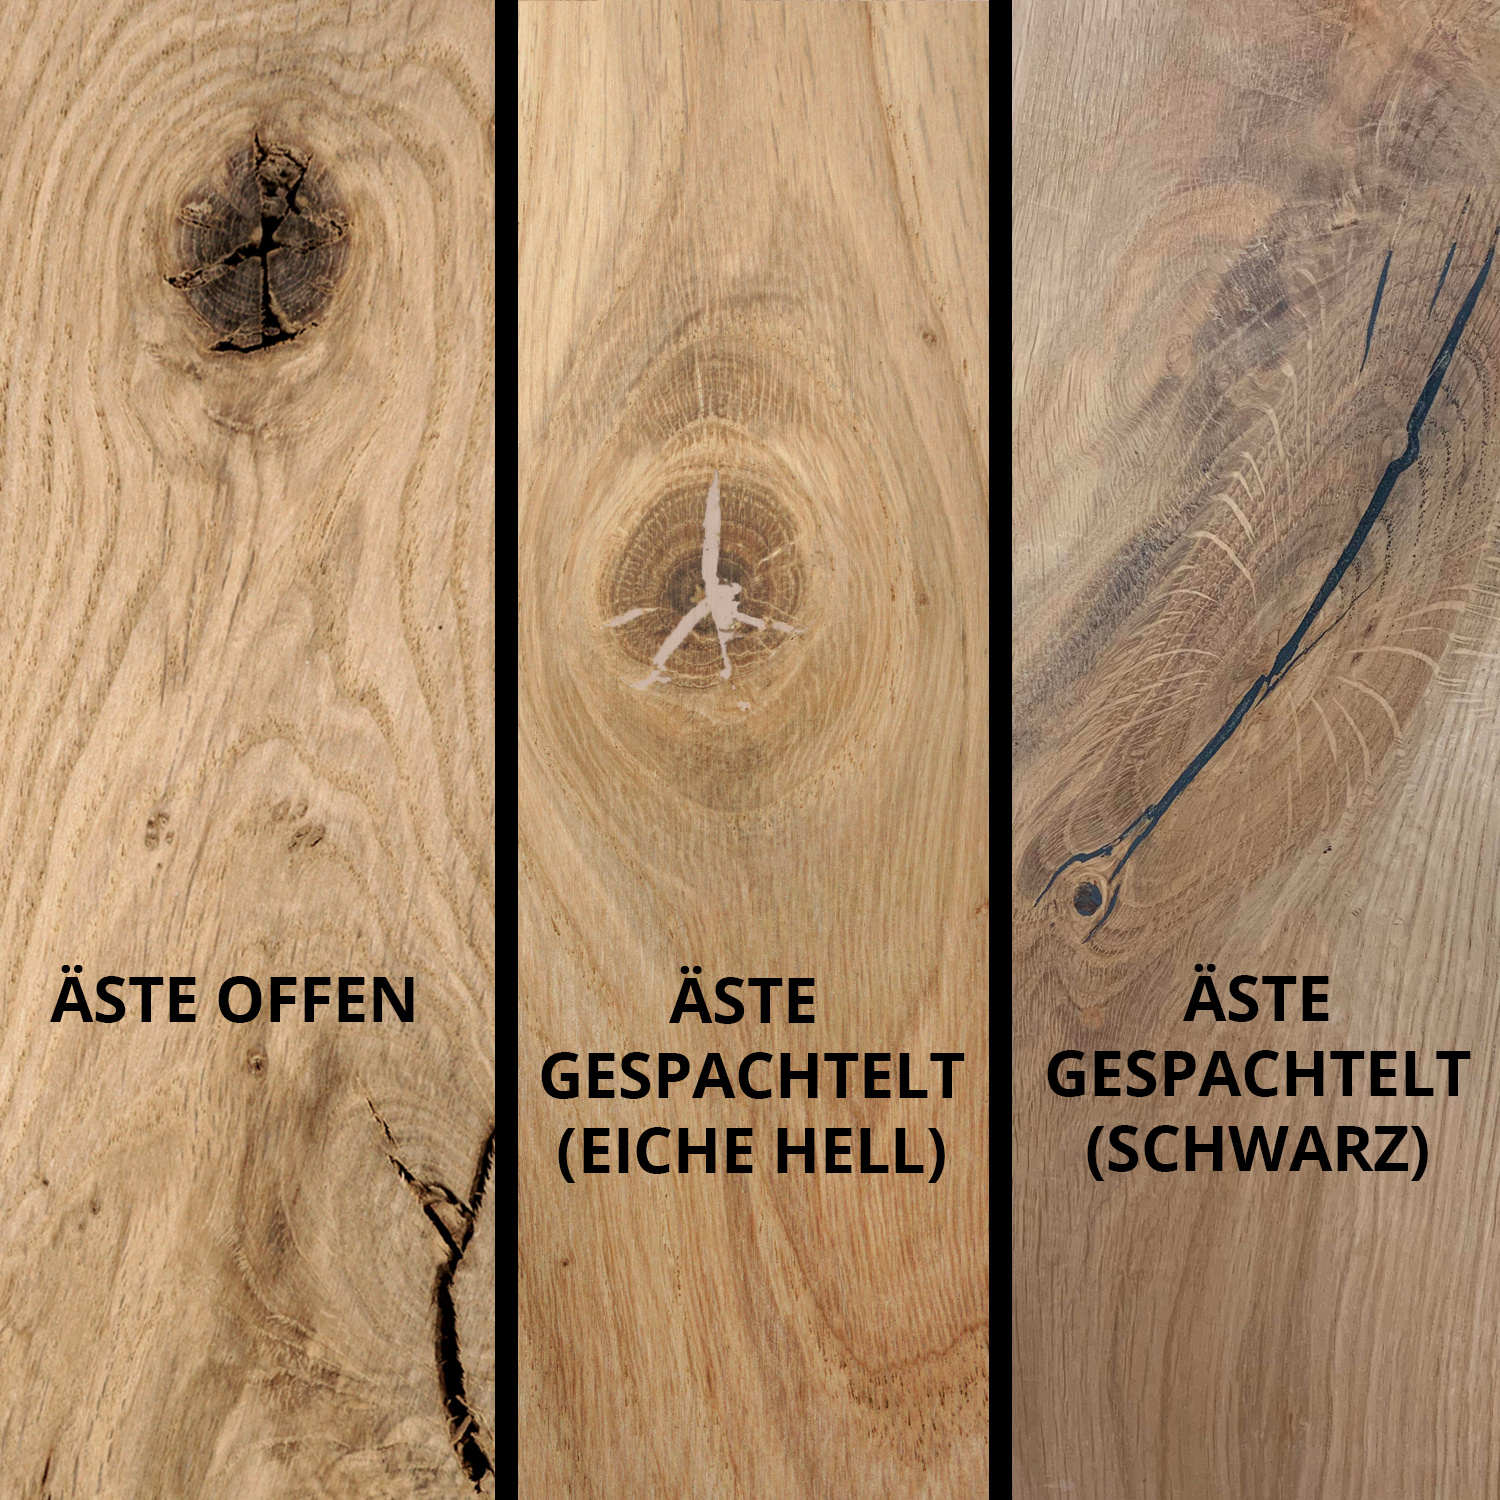  Tischplatte Eiche rund nach Maß - 5 cm dick (2-lagig) - Eichenholz rustikal - Durchmesser: 30 - 180 cm - Eiche Tischplatte rund massiv - verleimt & künstlich getrocknet (HF 8-12%)